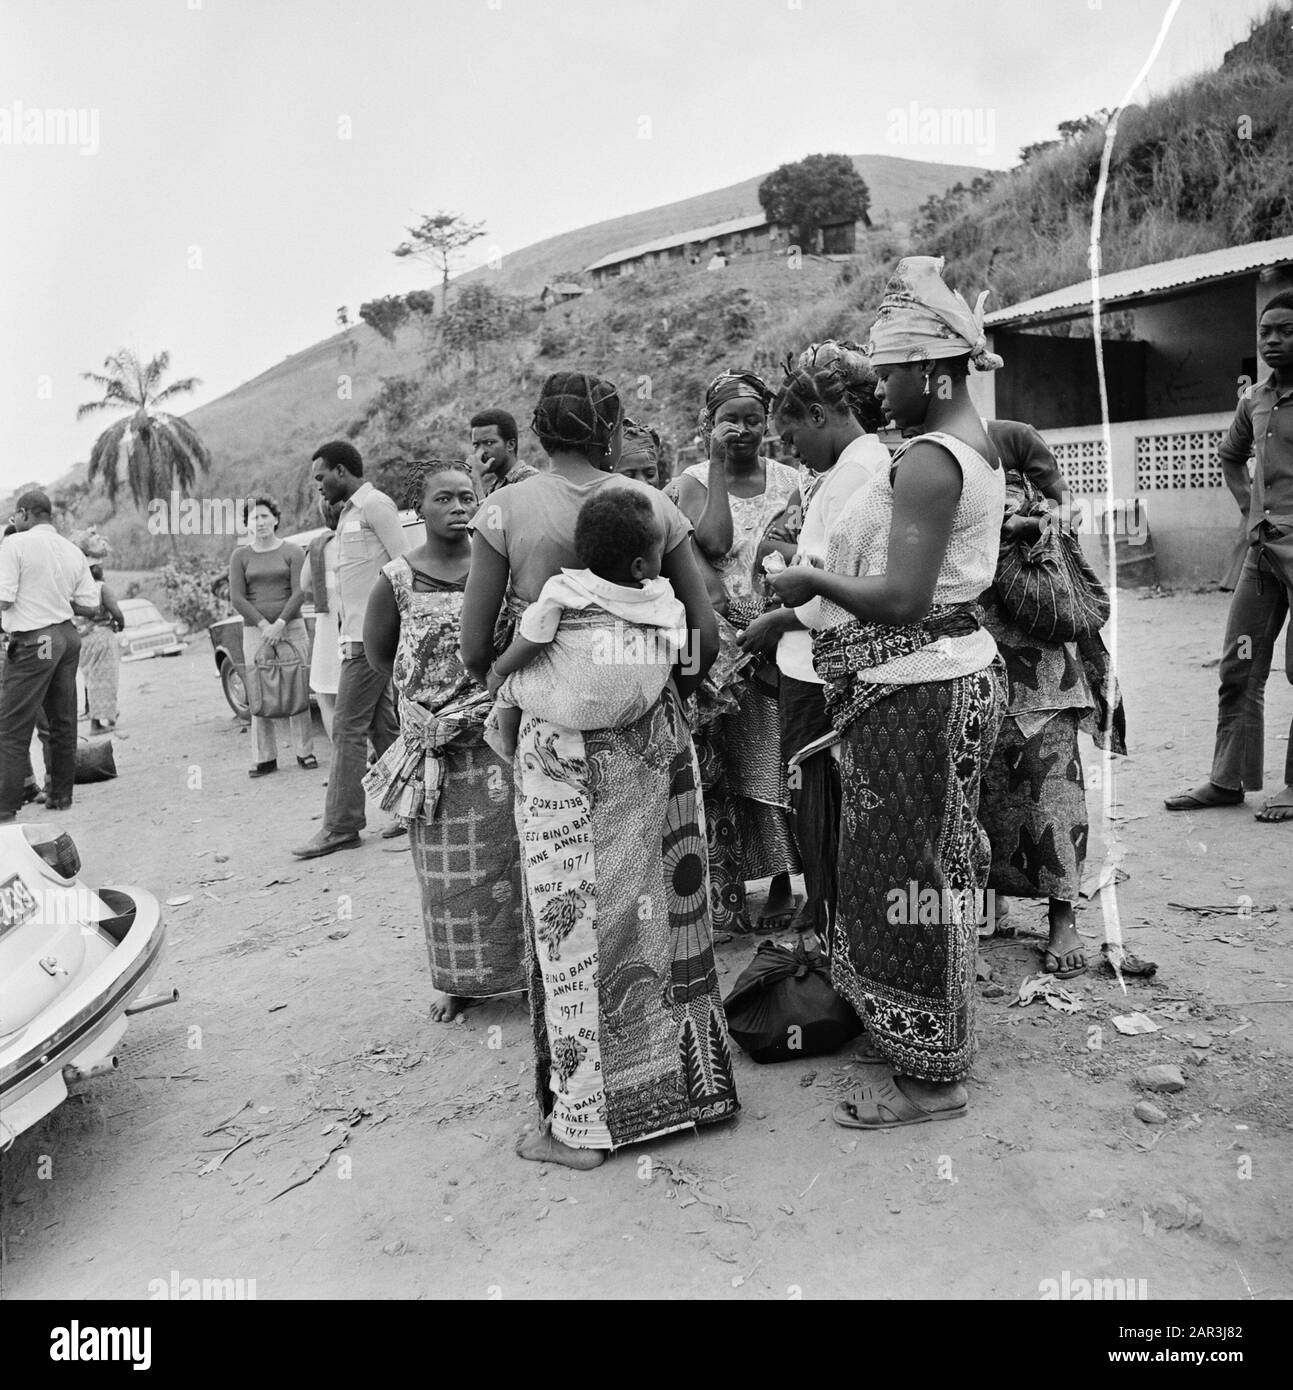 Zaire (ehemals Belgischer Kongo) Gruppe der Menschen auf dem Land Datum: 24. Oktober 1973 Ort: Kongo, Zaire Schlüsselwörter: Dorfleben, Straßen Stockfoto